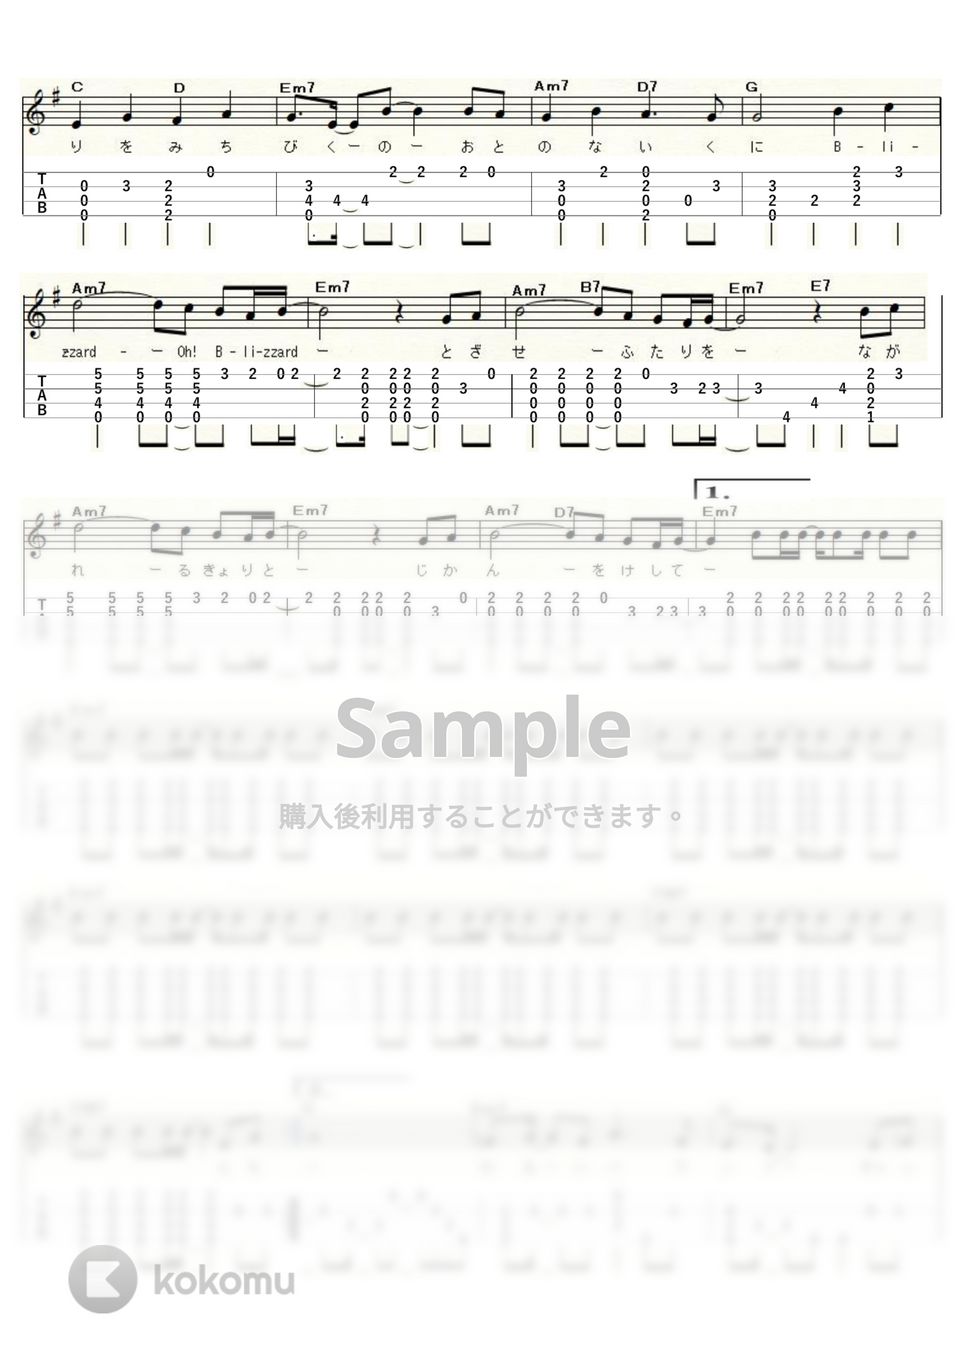 松任谷 由実 - BLIZZARD (ｳｸﾚﾚｿﾛ / Low-G / 中級) by ukulelepapa